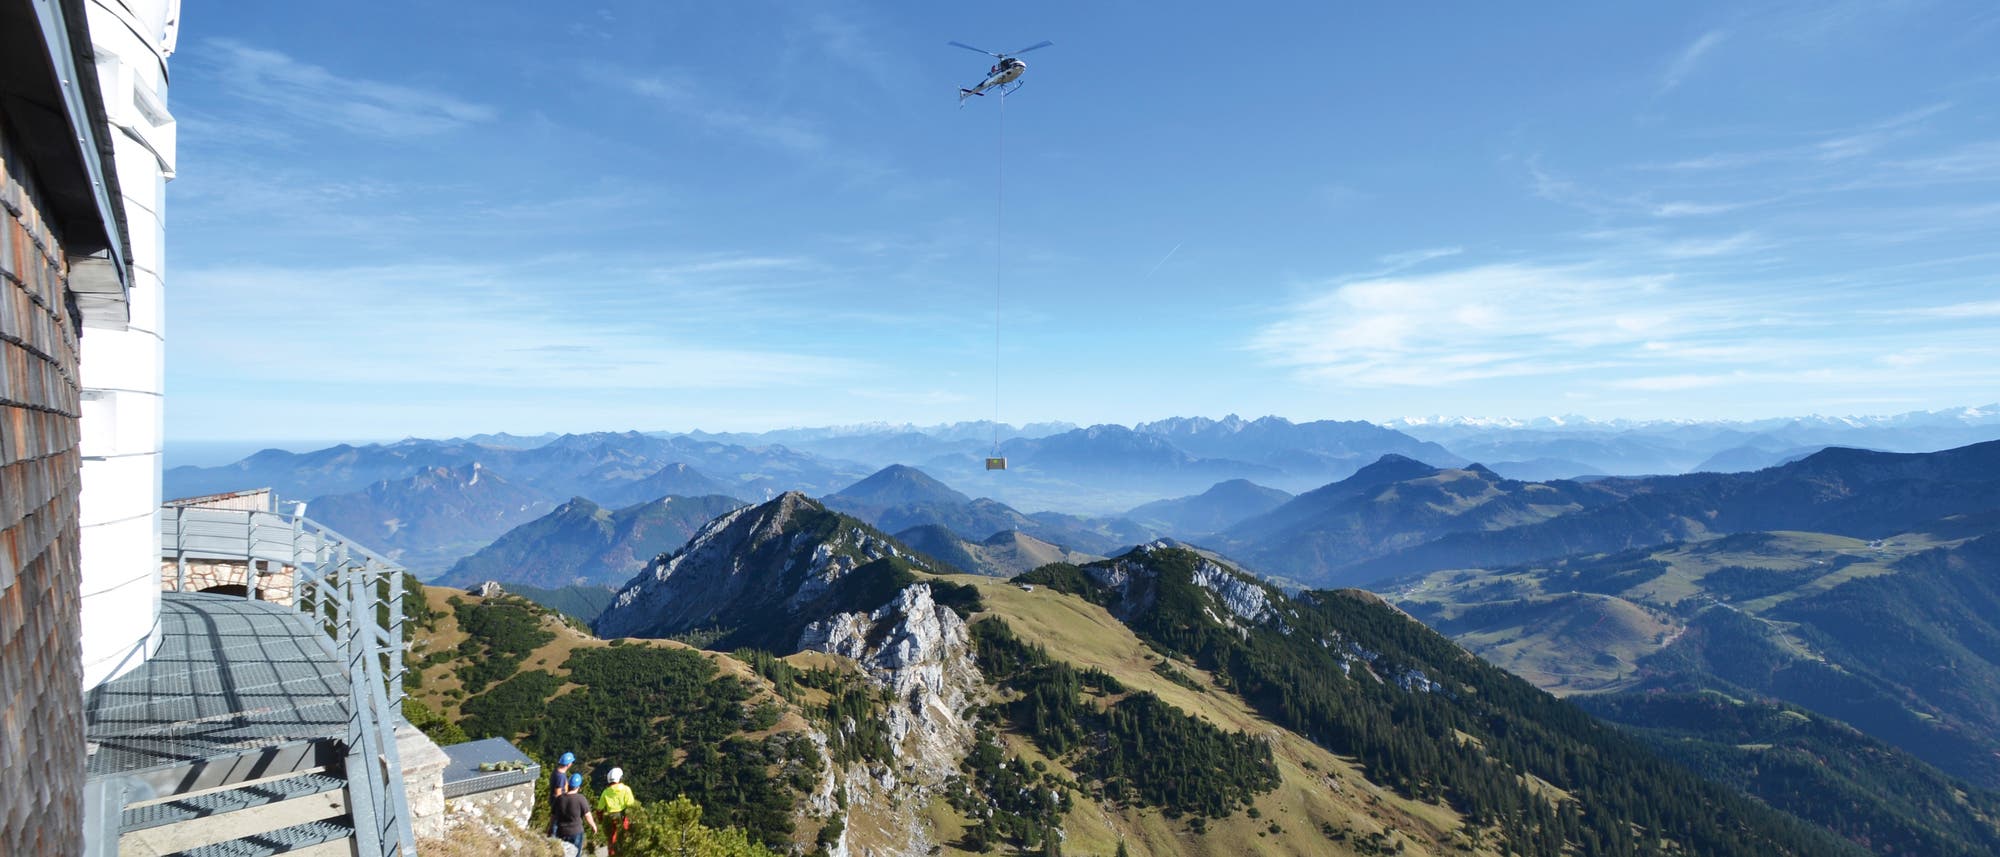 Ein Hubschrauber brachte im Oktober 2016 neue optische Instrumente auf das Wendelstein-Observatorium  in 1838 Meter Höhe. 